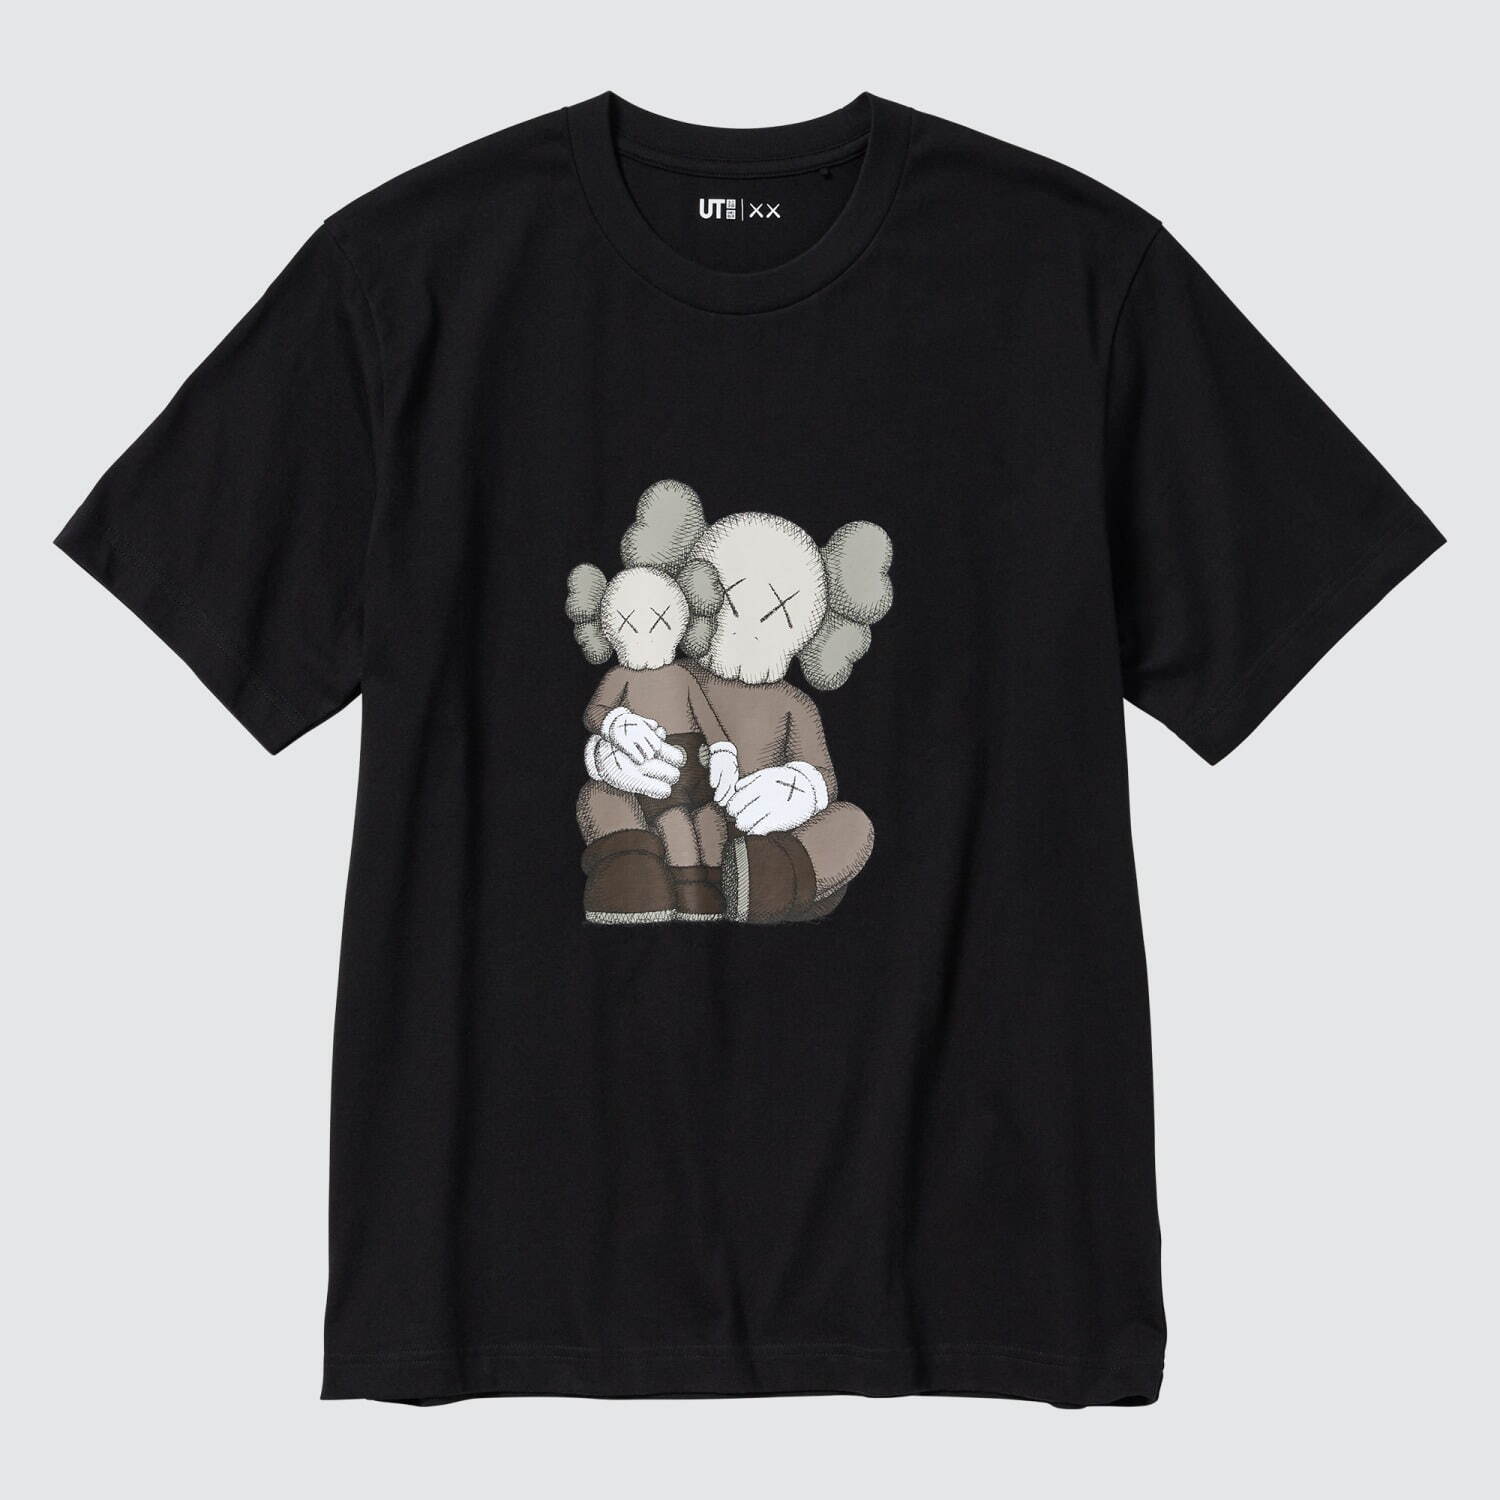 ユニクロ「UT」KAWSコラボ - “××”モチーフのTシャツやスウェット ...